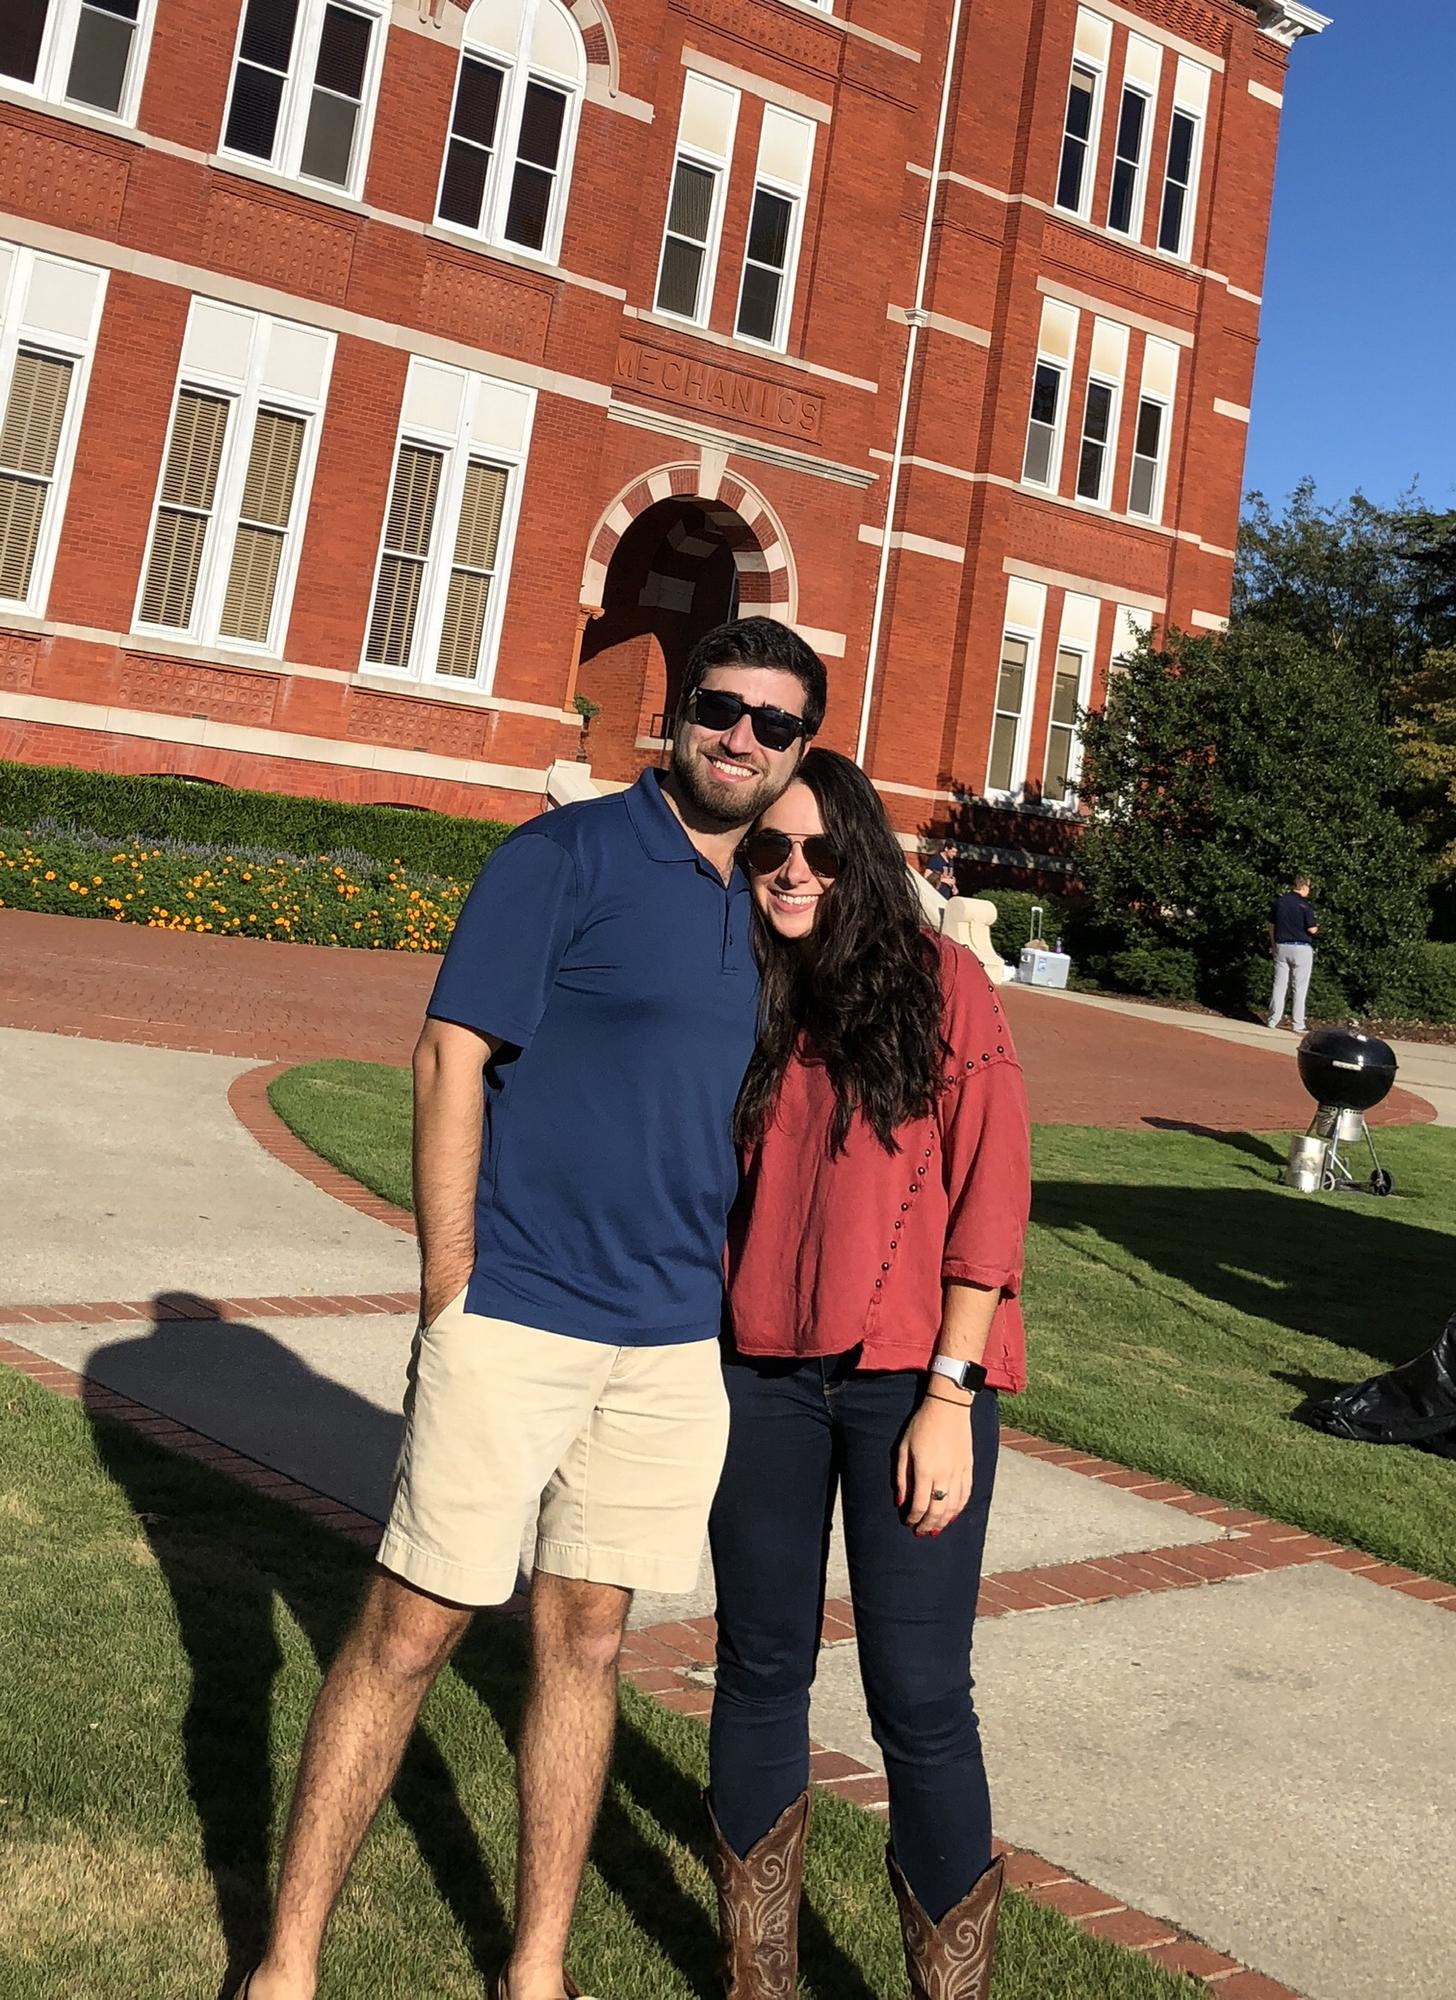 Visiting Auburn, AL
October 2018